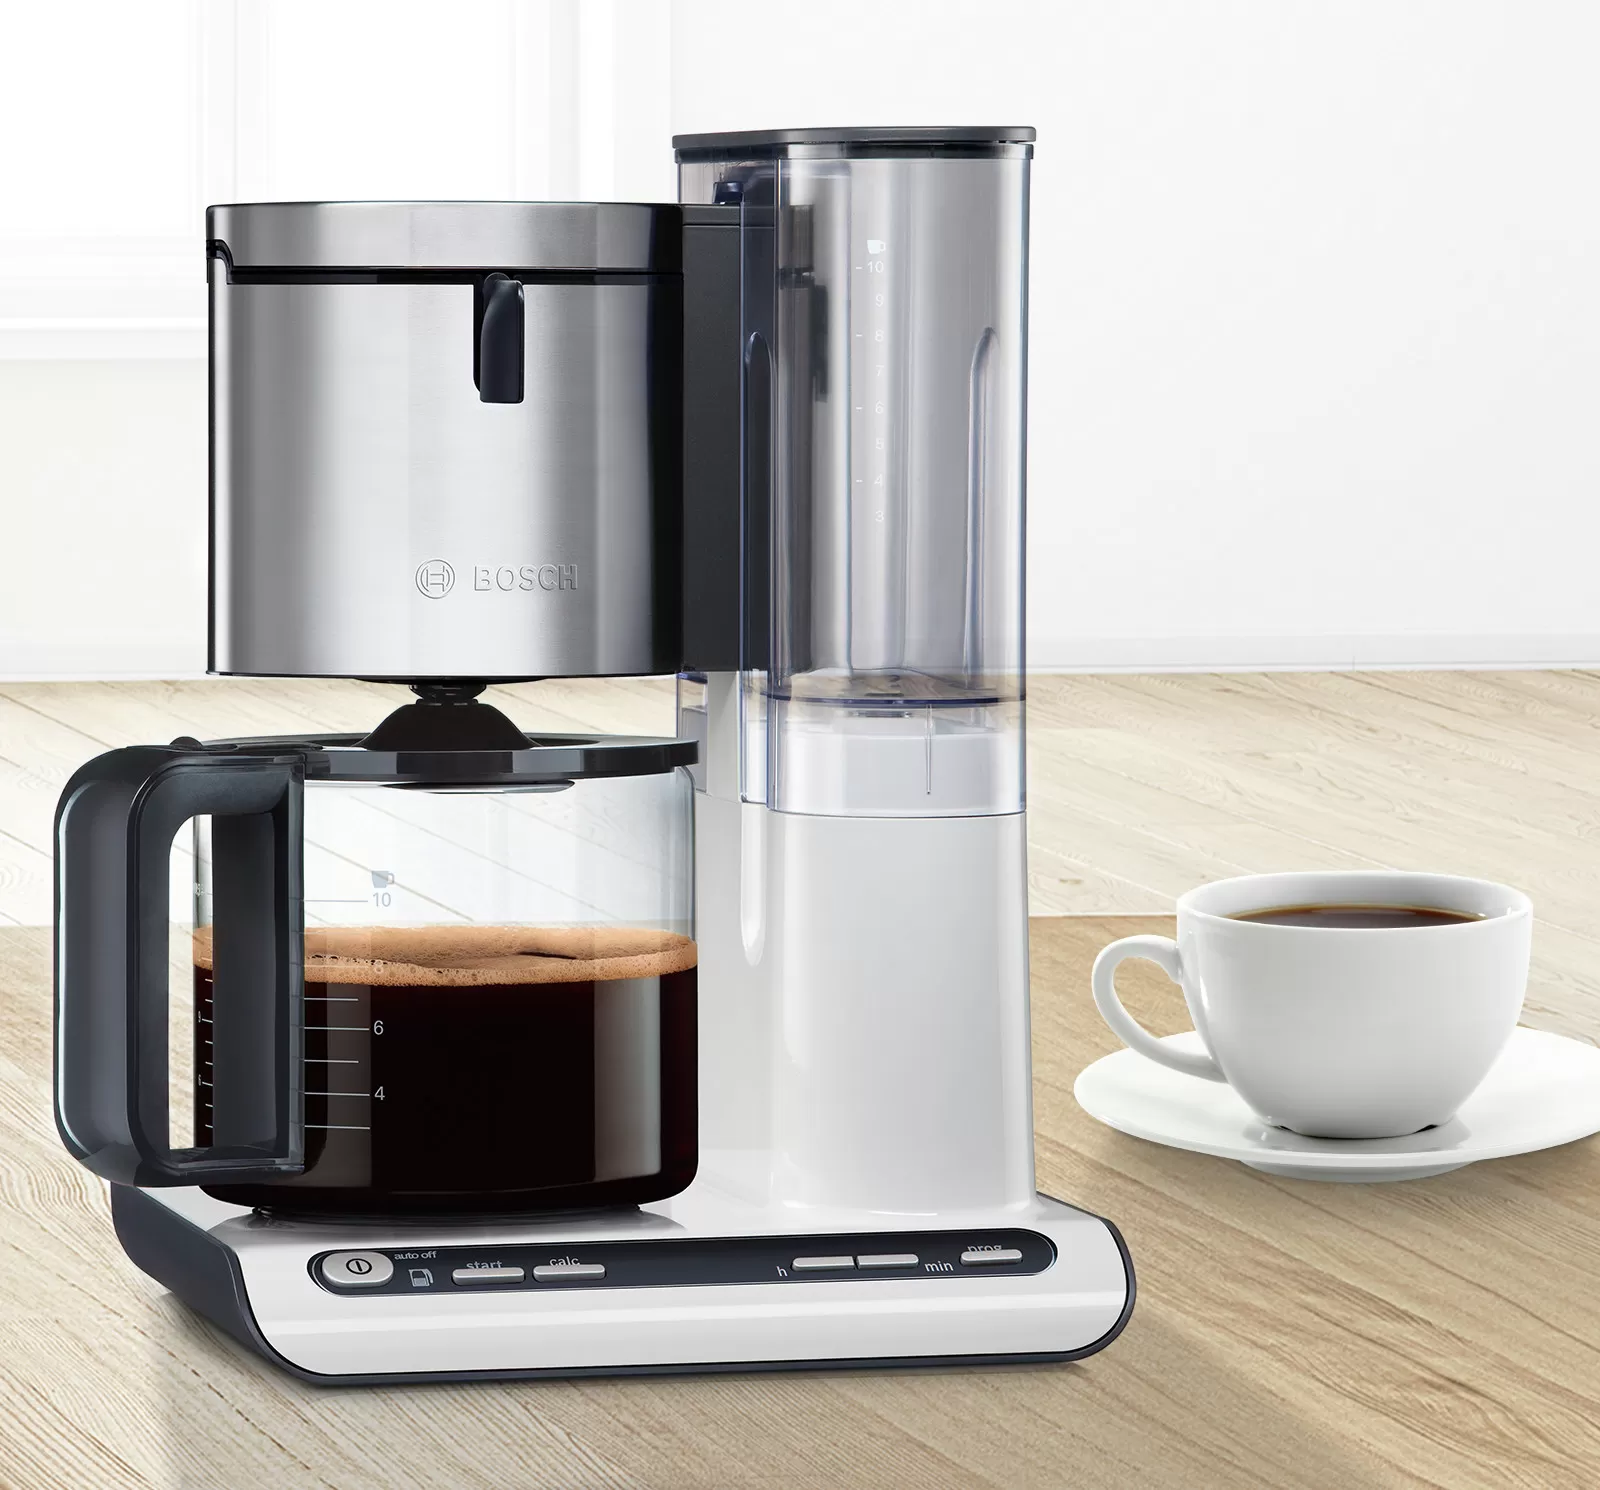 Máy pha cà phê nhỏ giọt của Bosch: chỉ đơn giản là một tách cà phê thơm ngon.